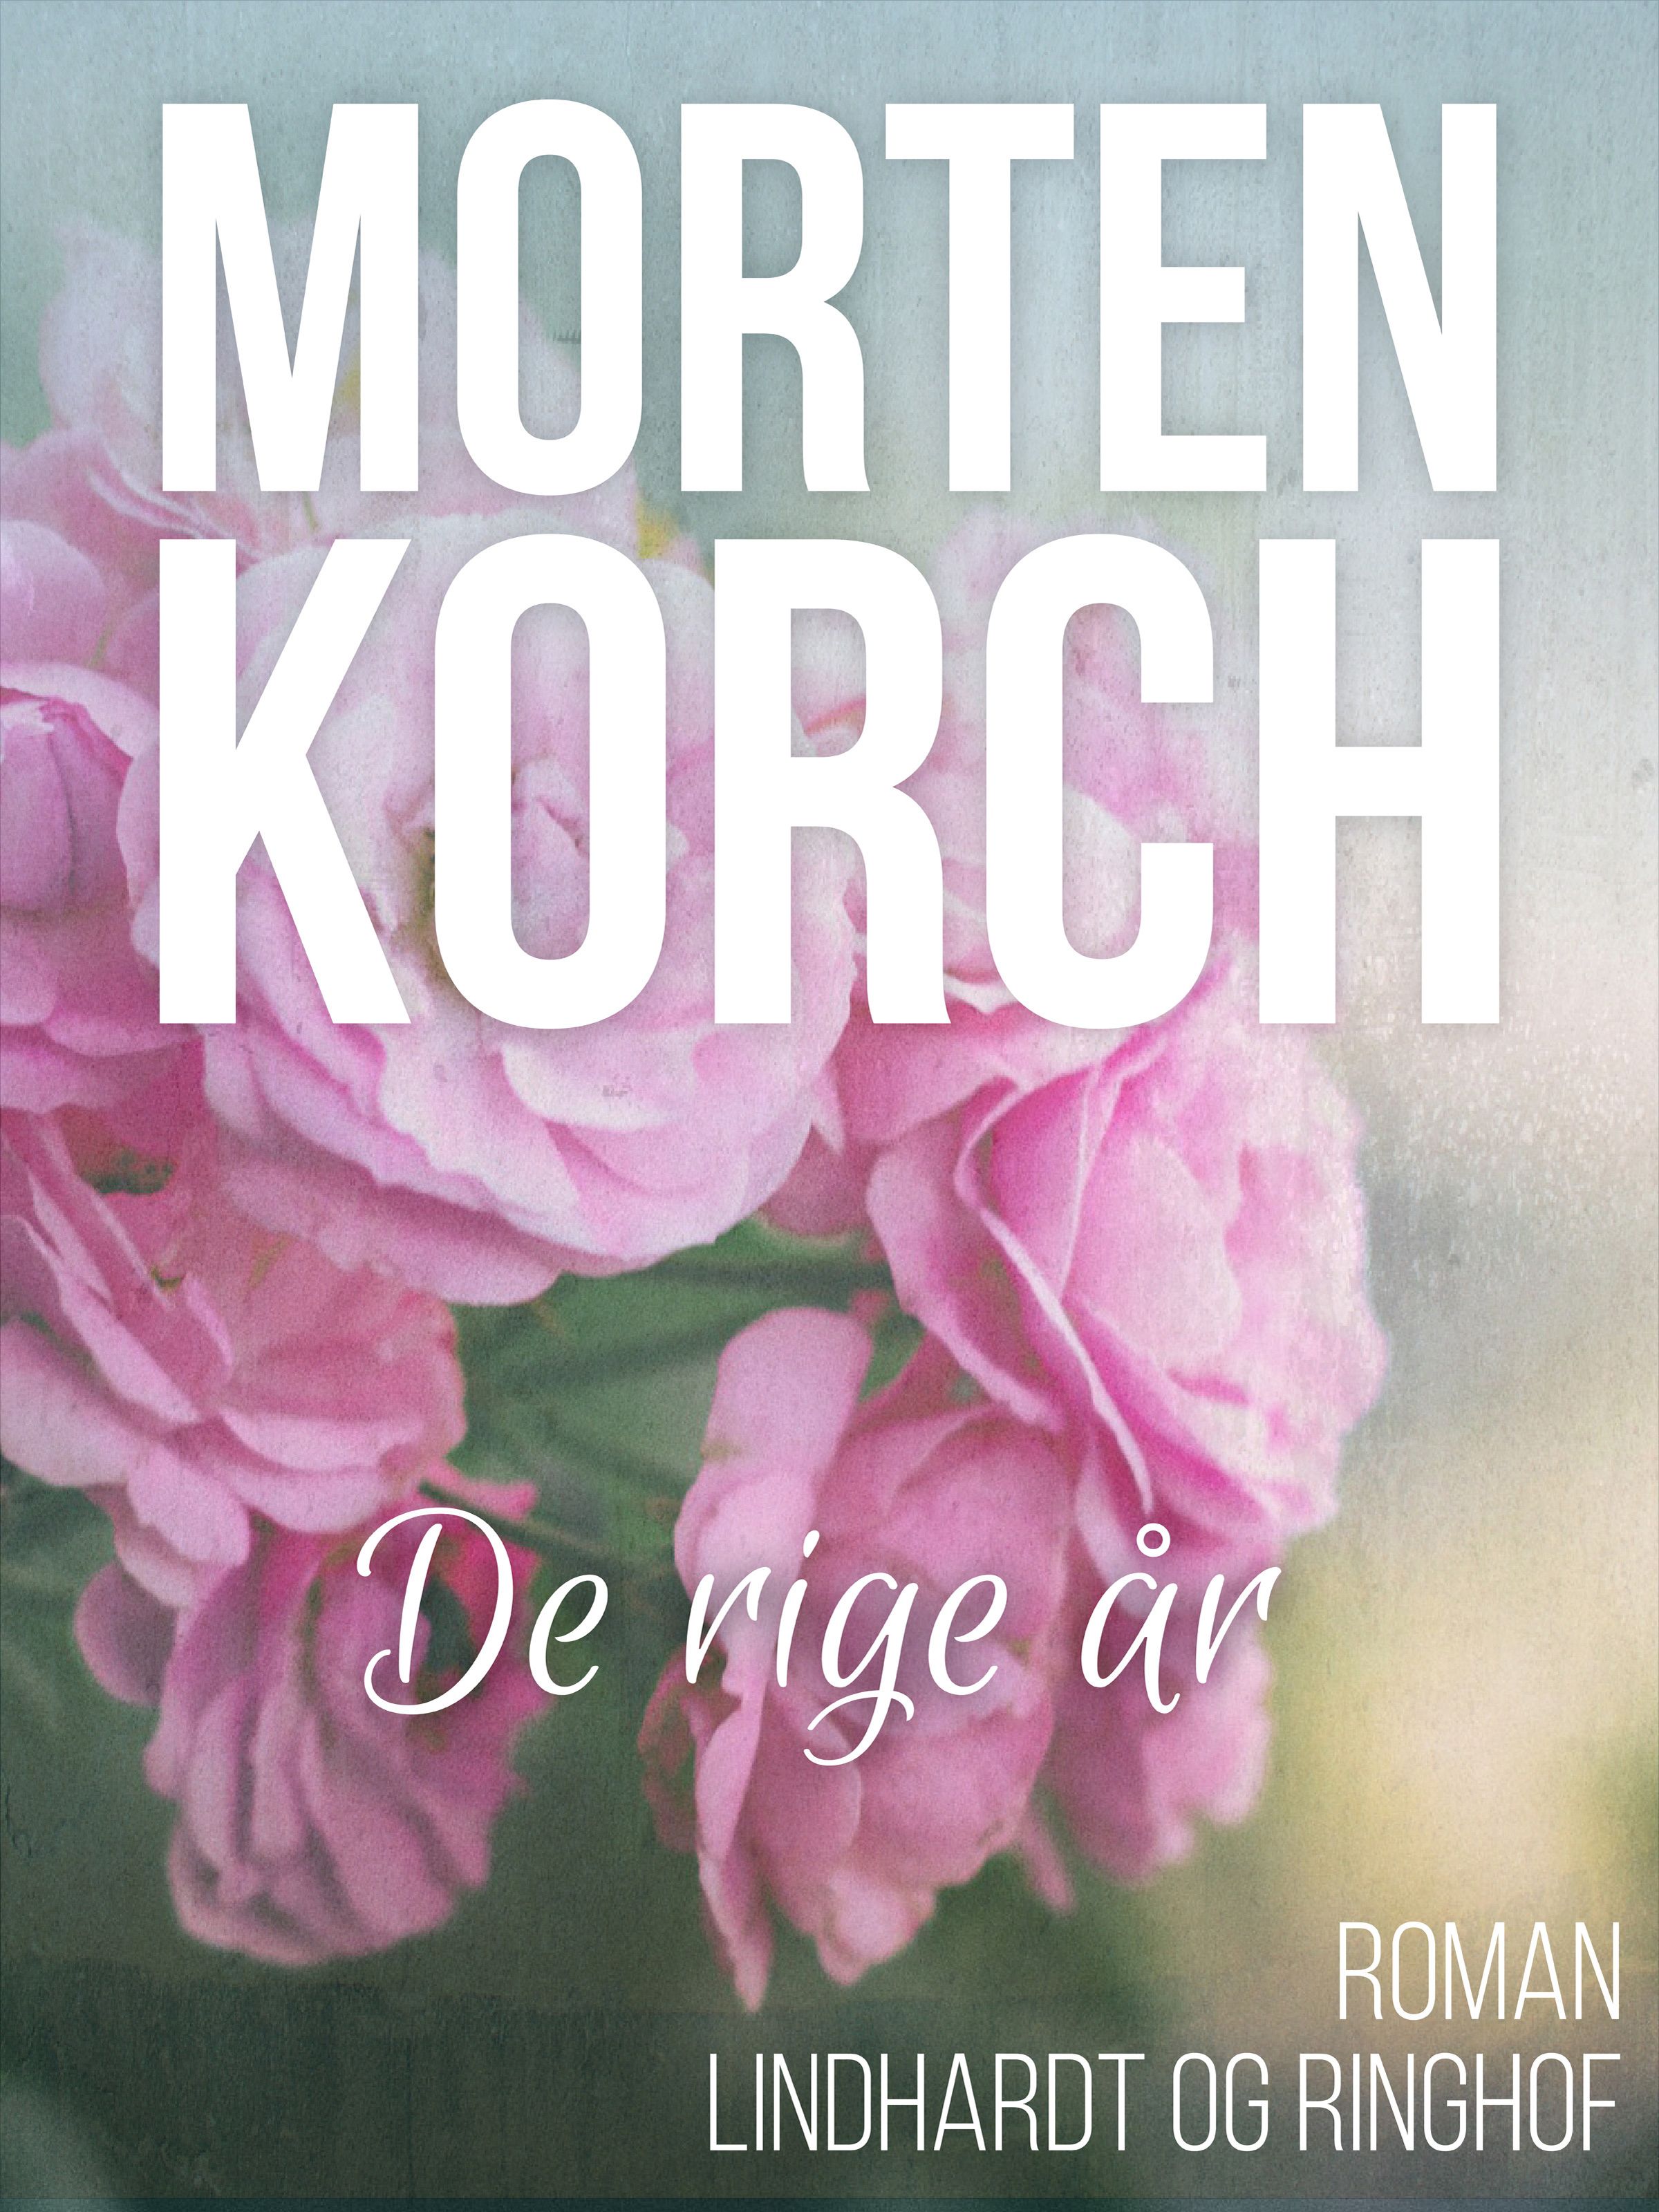 De rige år, e-bog af Morten Korch